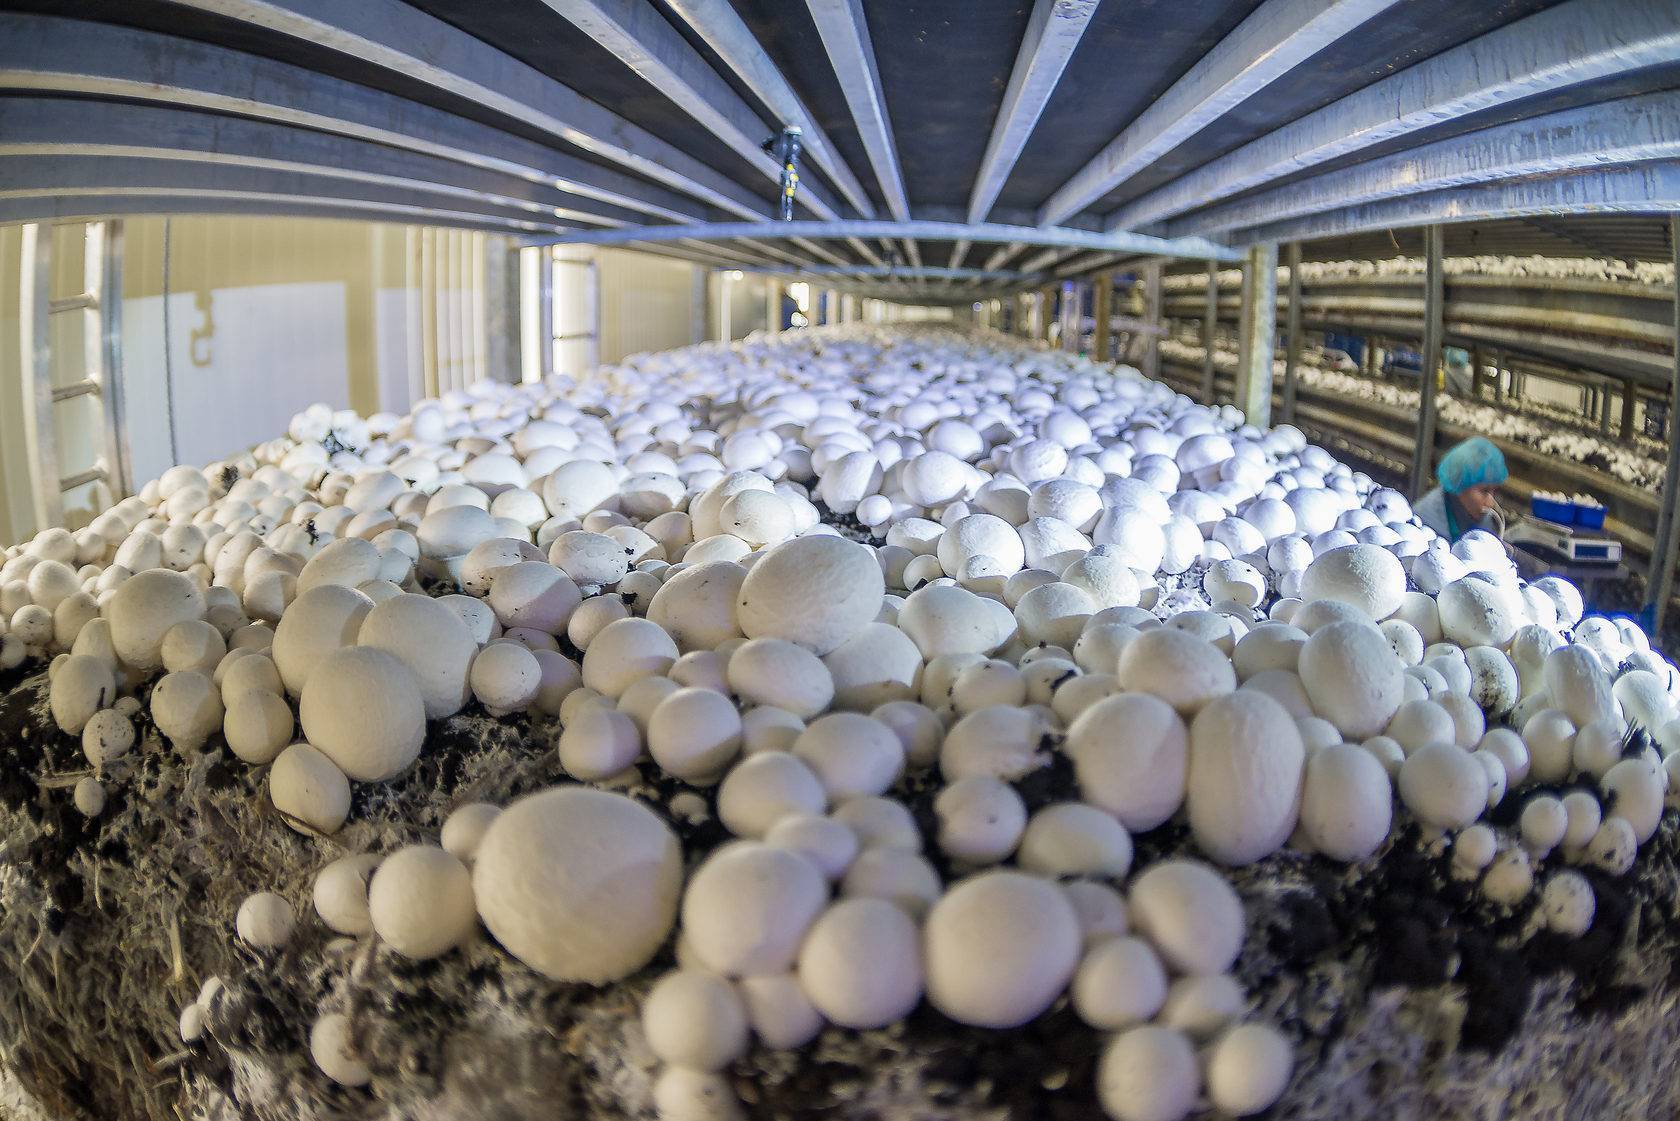 Теплицы для разведения грибов круглый год: выращивание белых, шампиньонов, вешенки, зимний опенок